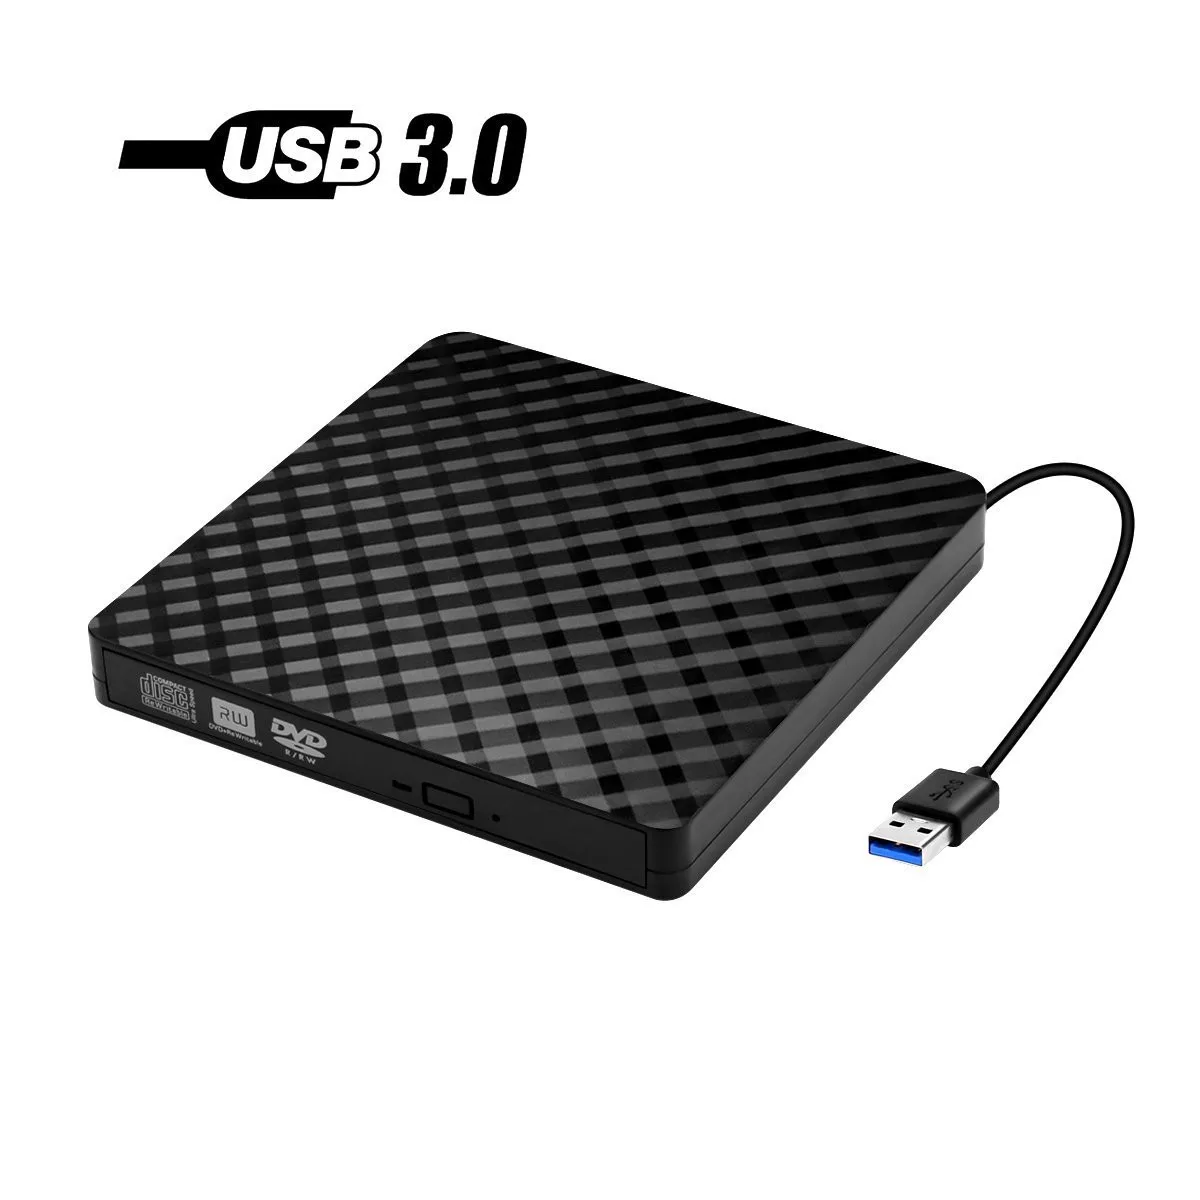 USB3.0 высокоскоростной Черный Внешний комбинированный оптический привод CD/DVD плеер CD/DVD RW ROM